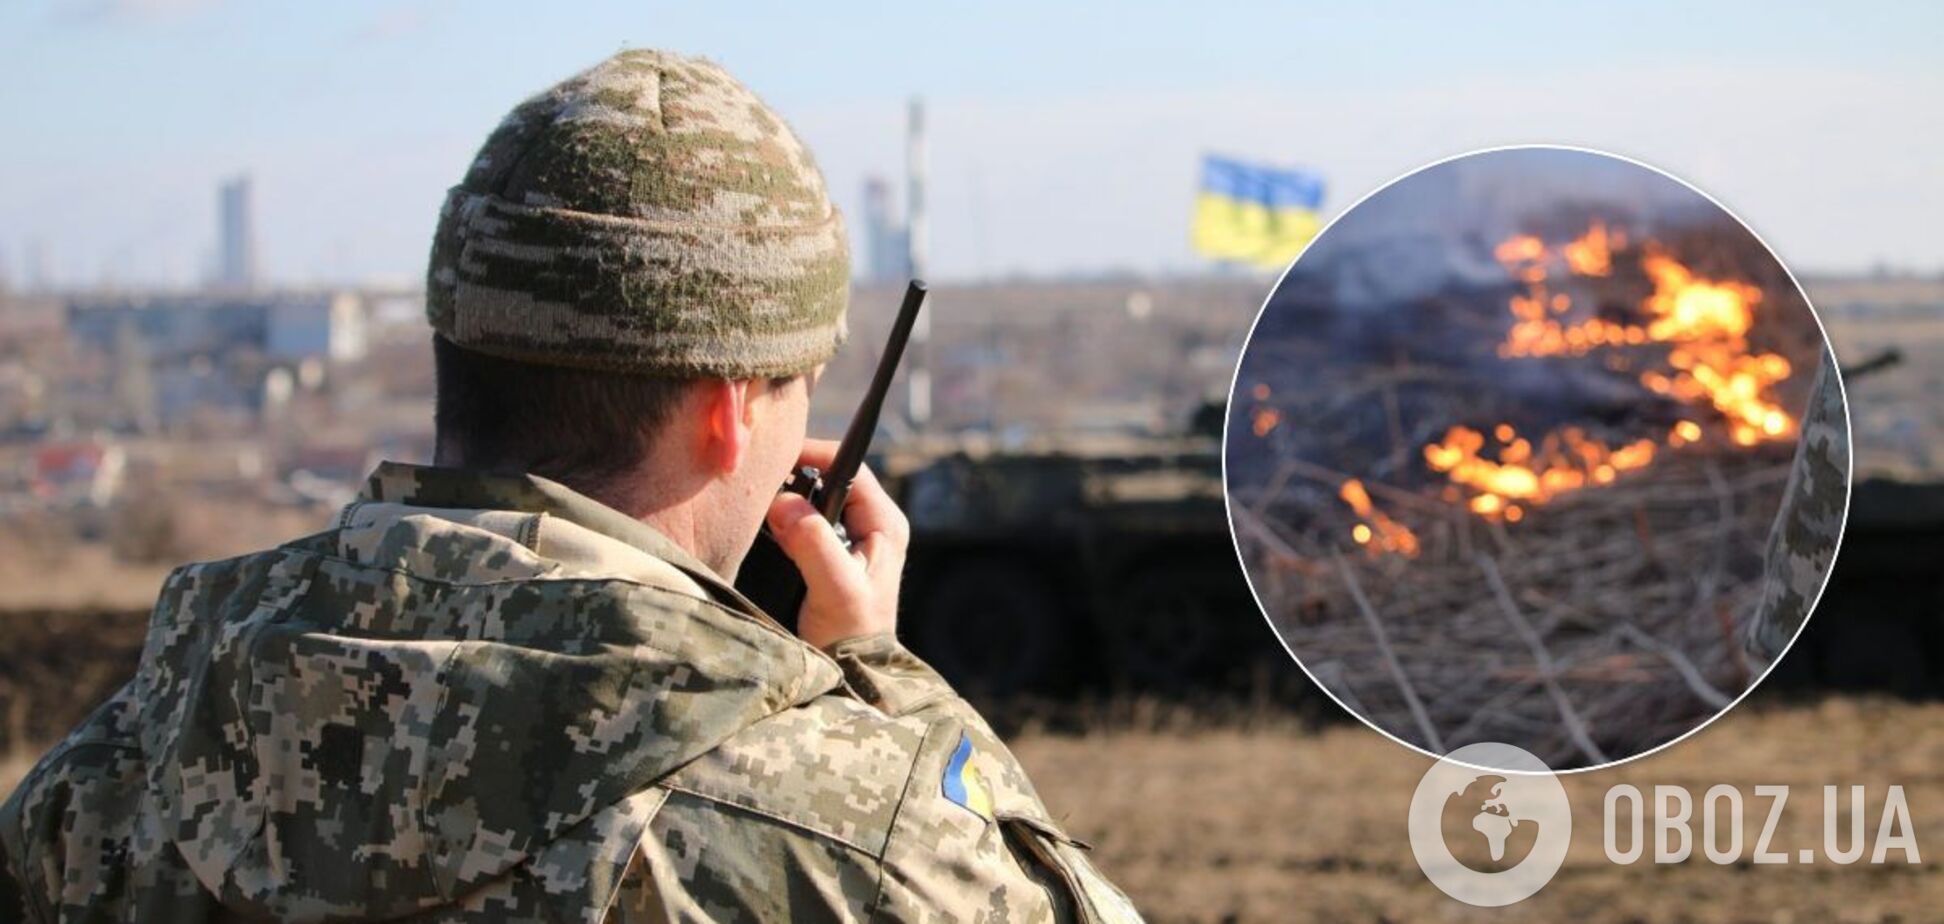 Терористи підпалили позиції українських військових на Донбасі